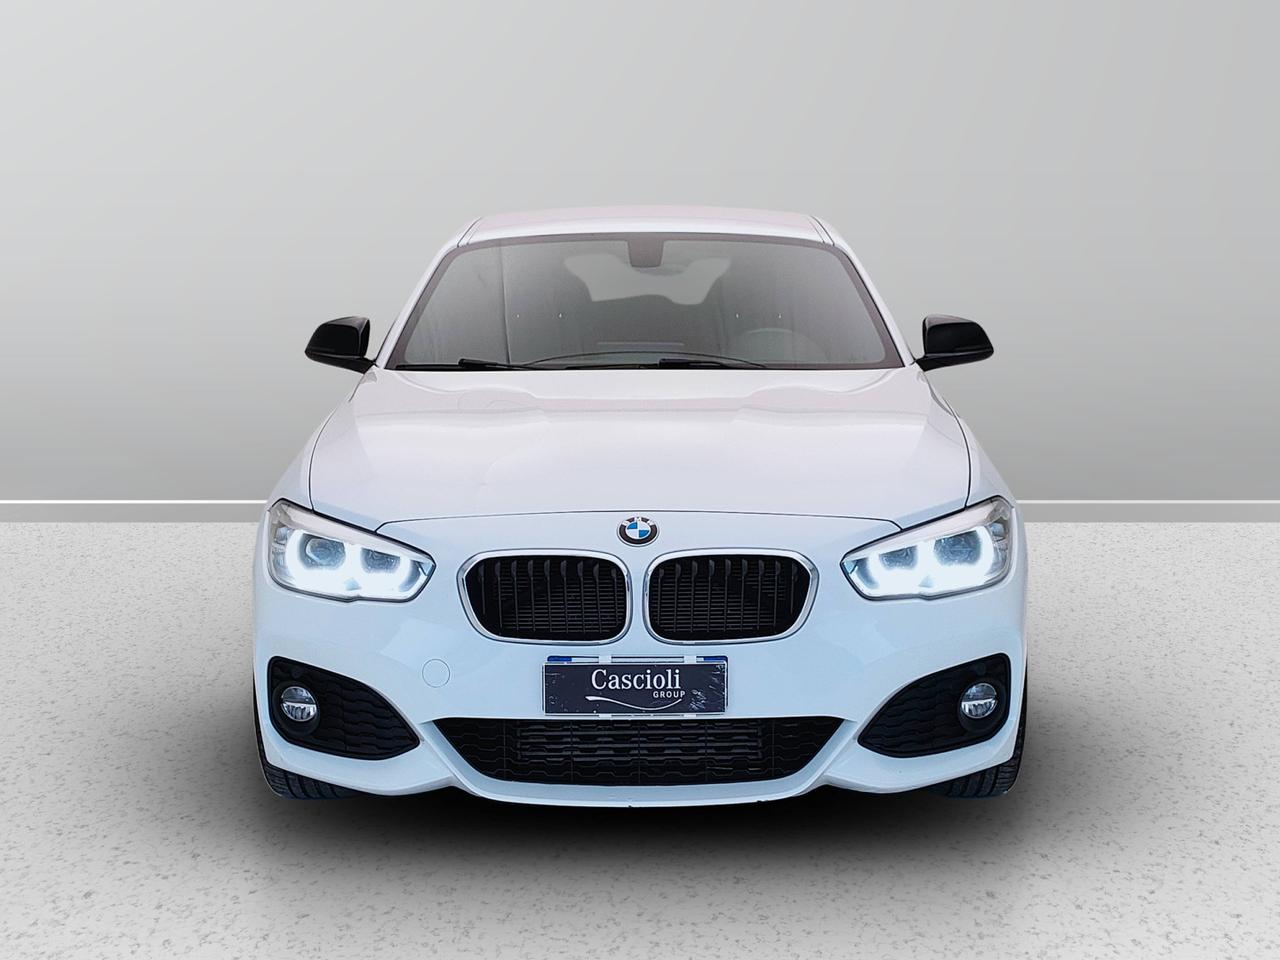 BMW Serie 1 F/20-21 2015 120d 5p xdrive Sport auto